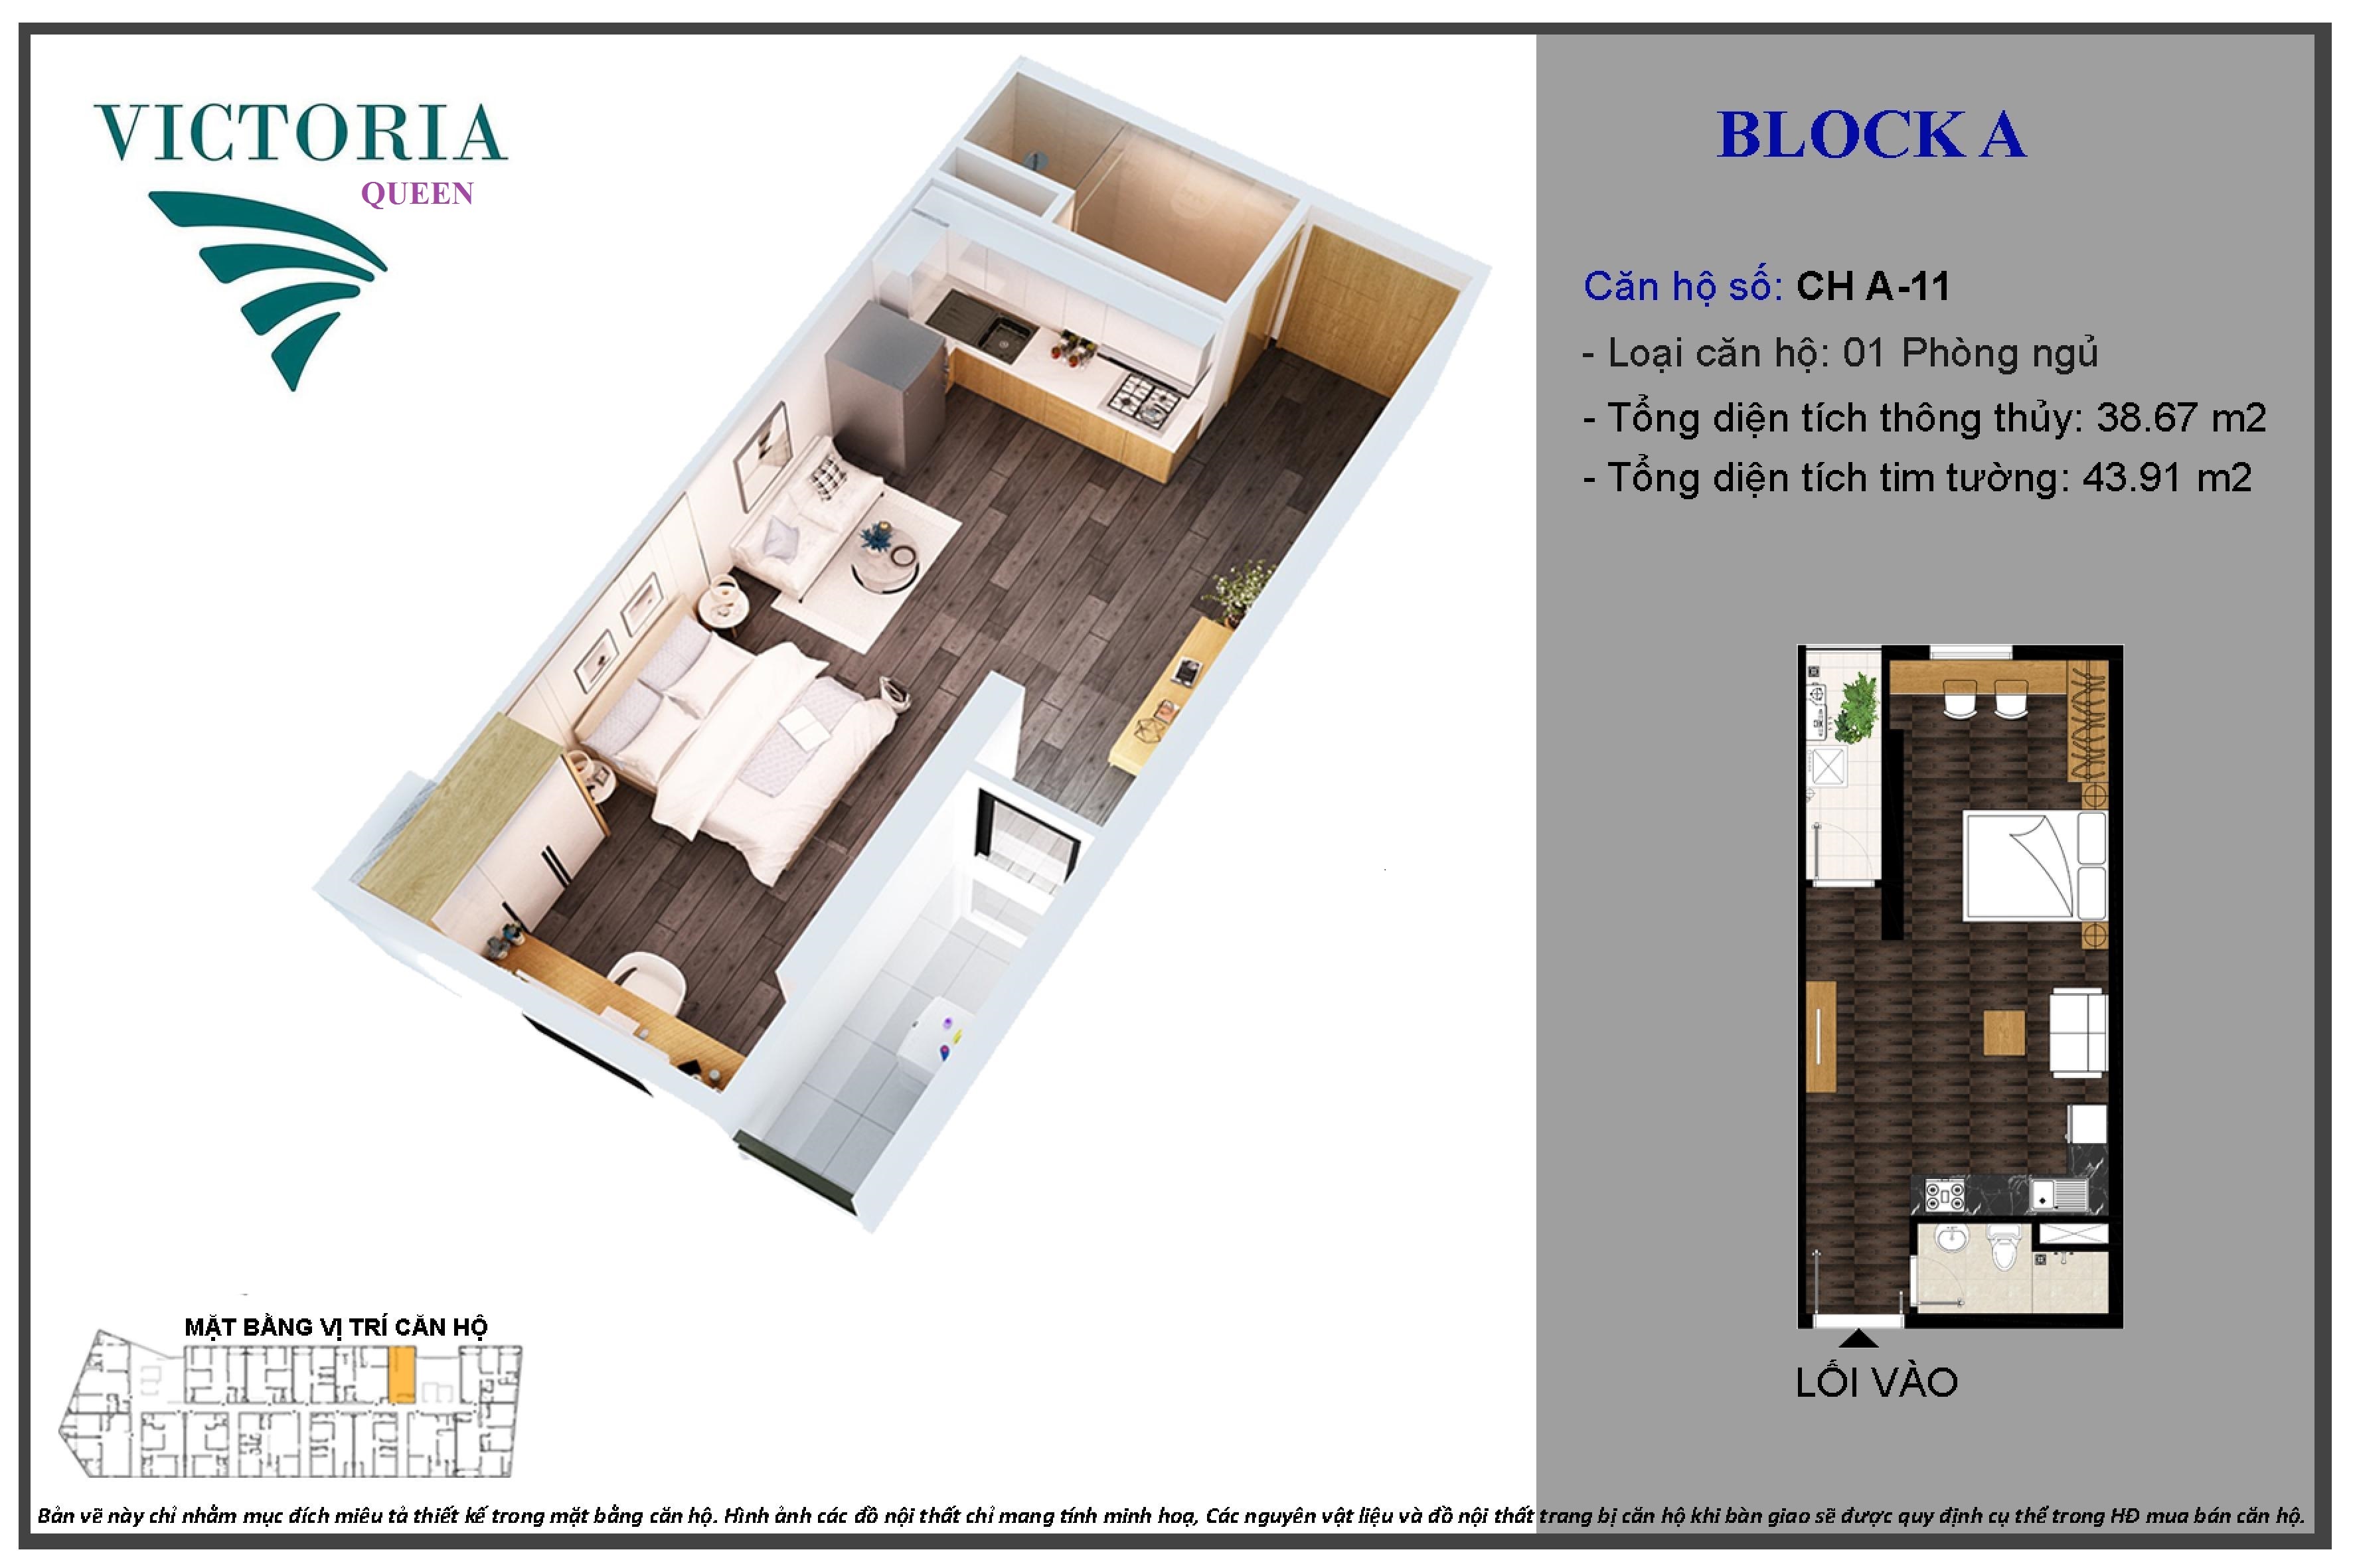 Mẫu thiết kế căn hộ 1PN dự án căn hộ Victoria Queen Bình Tân